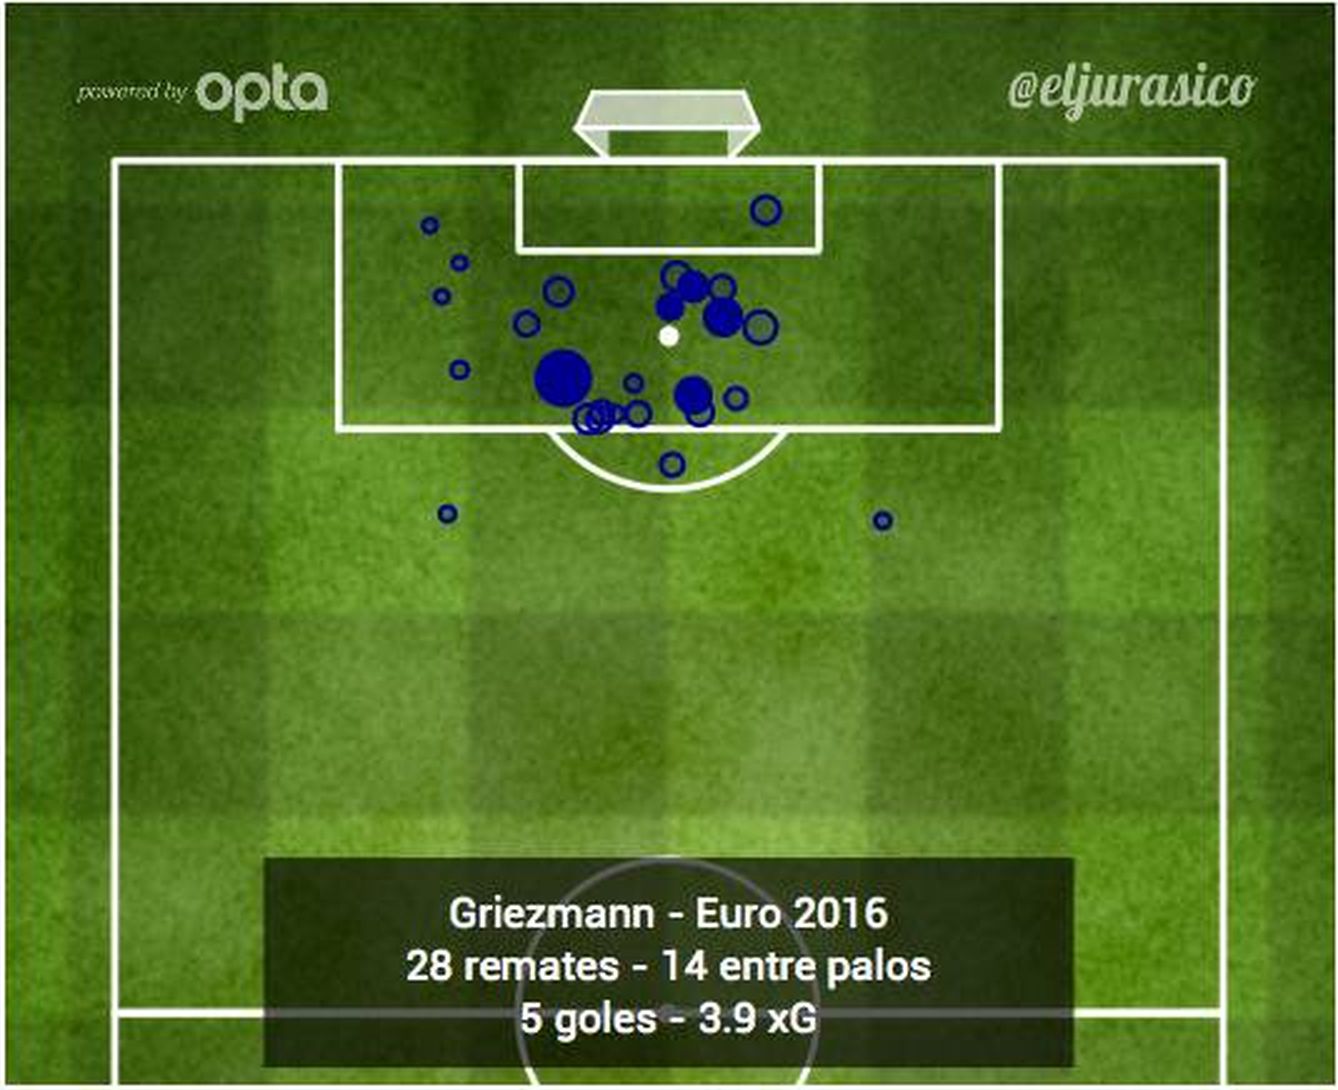 Ocasiones de Griezmann en la Eurocopa. El tamaño indica la calidad de la ocasión. Penaltis excluidos